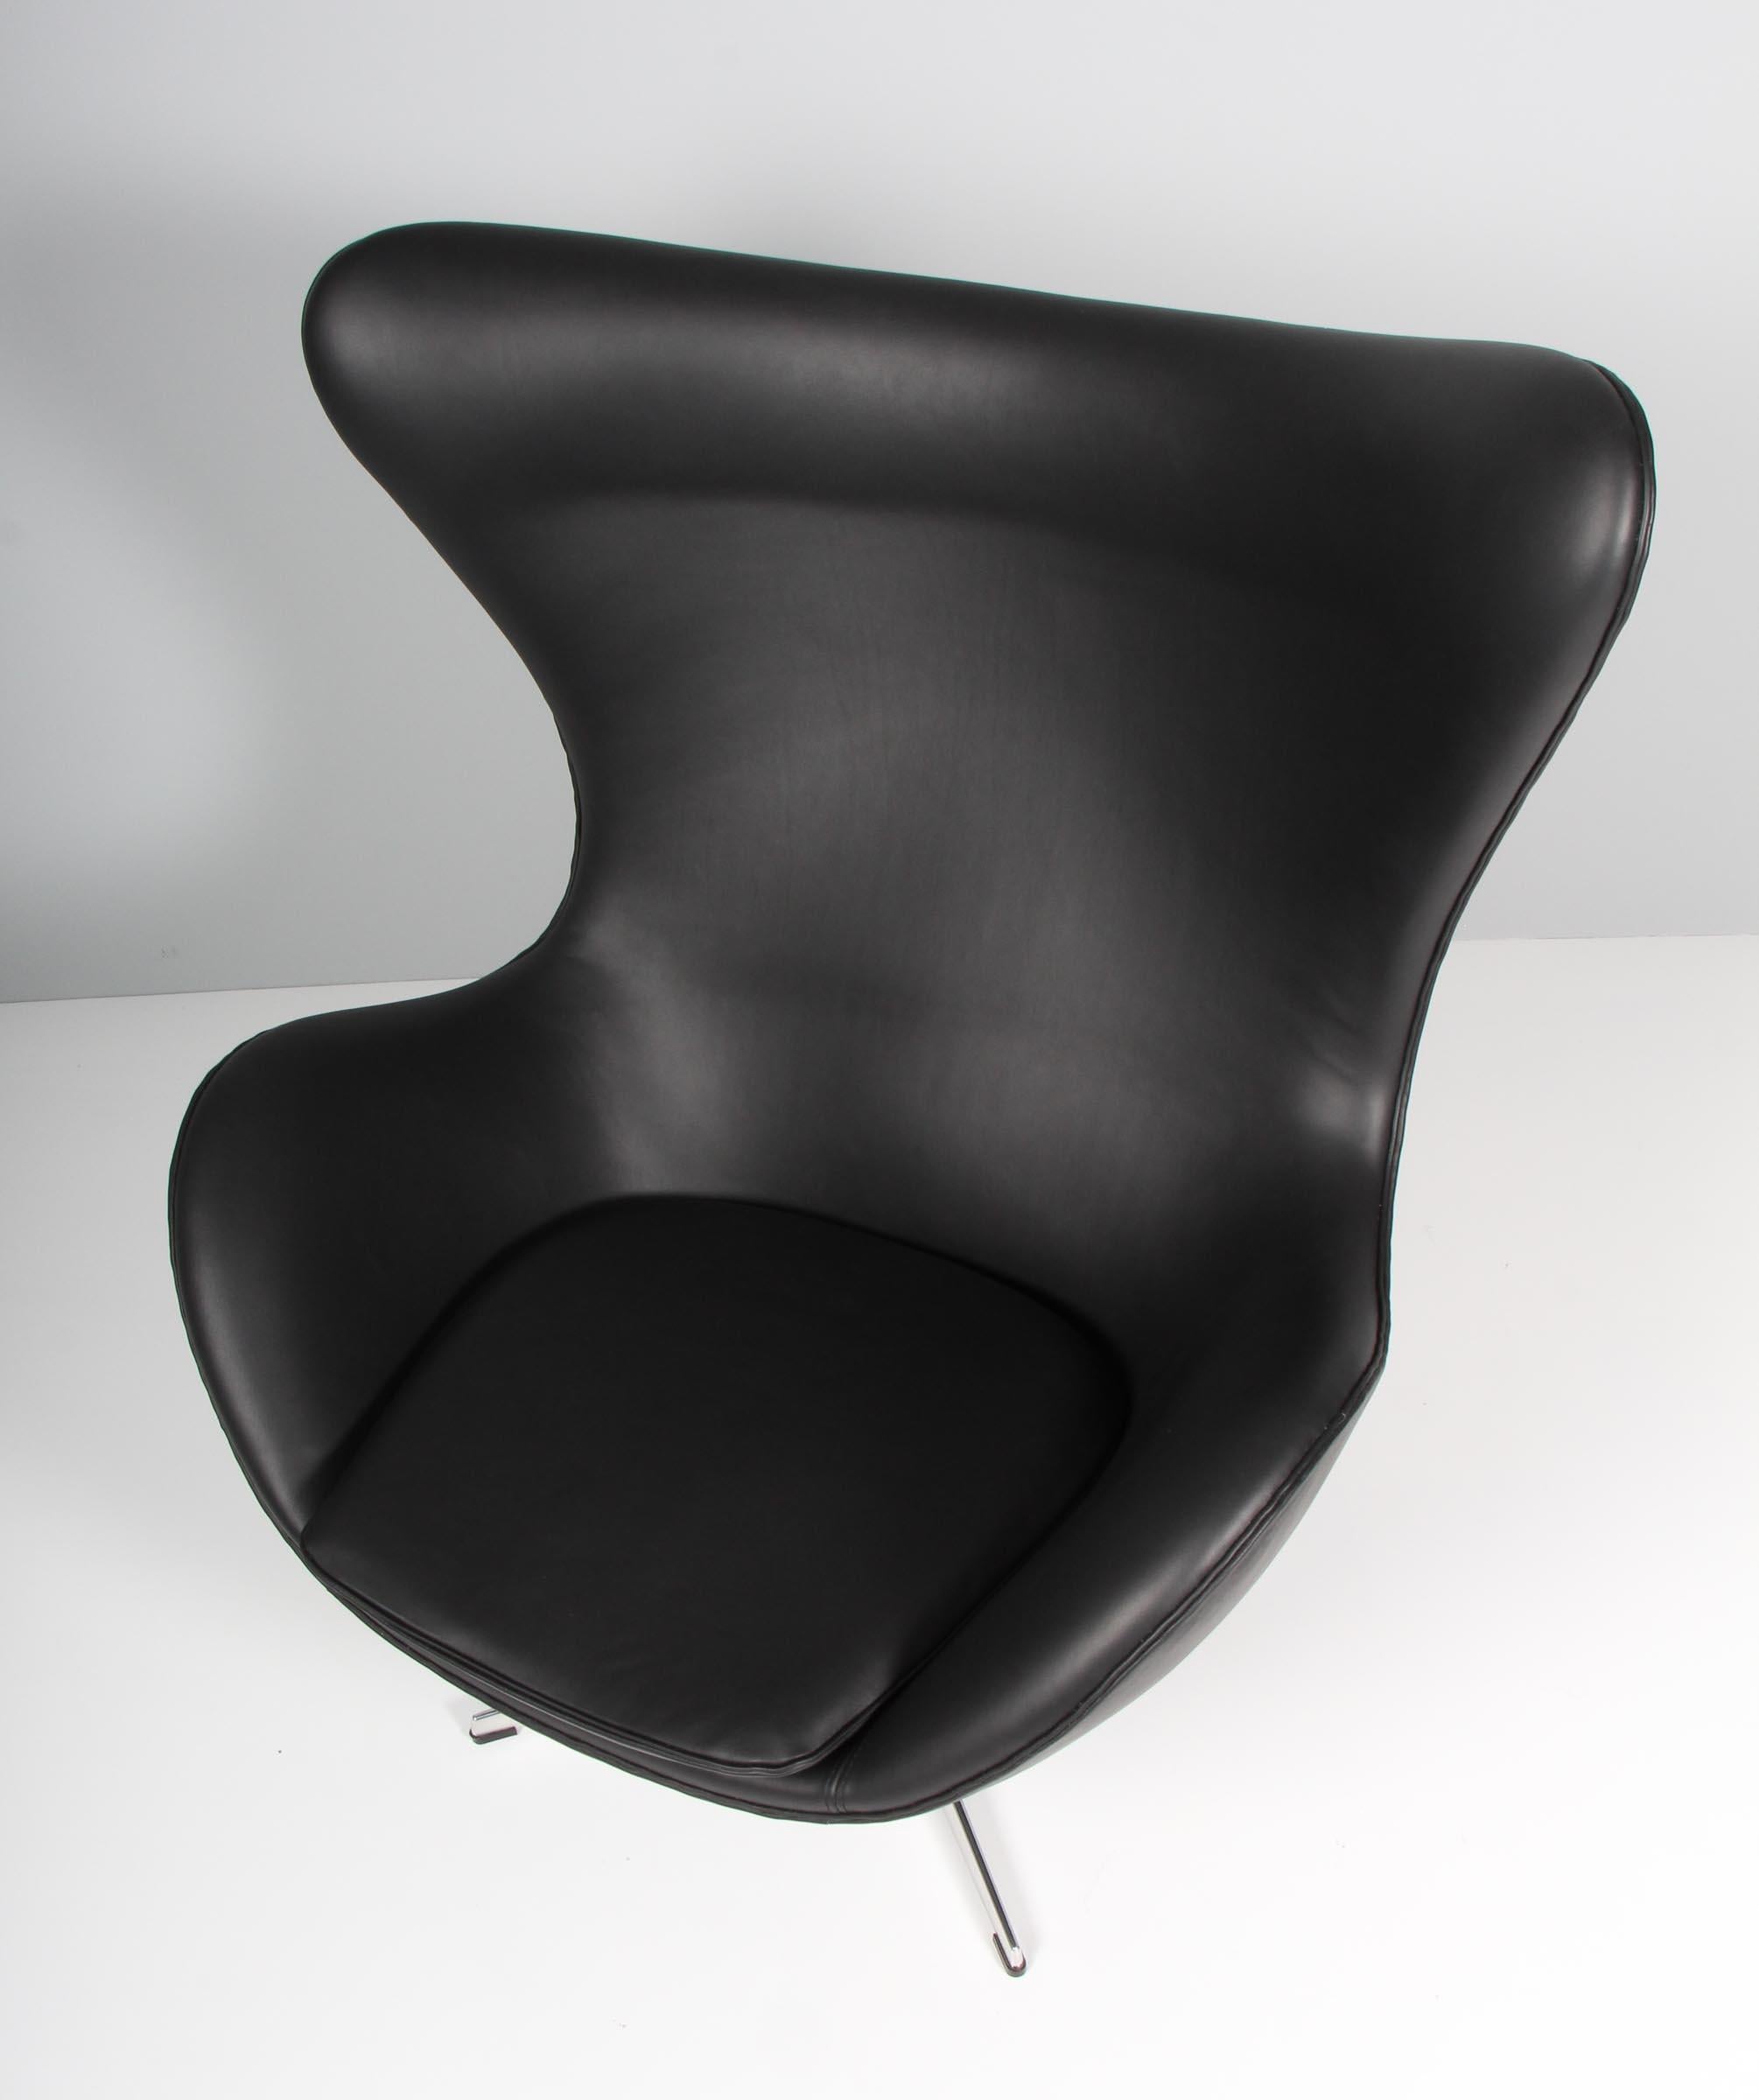 Ensemble de chaises longues Arne Jacobsen modèle Egg. Nouvelle sellerie en cuir aniline noir Dakar.

Base quatre étoiles avec fonction d'inclinaison.

Fabriqué par Fritz Hansen.

Cette chaise emblématique est l'une des plus célèbres au monde